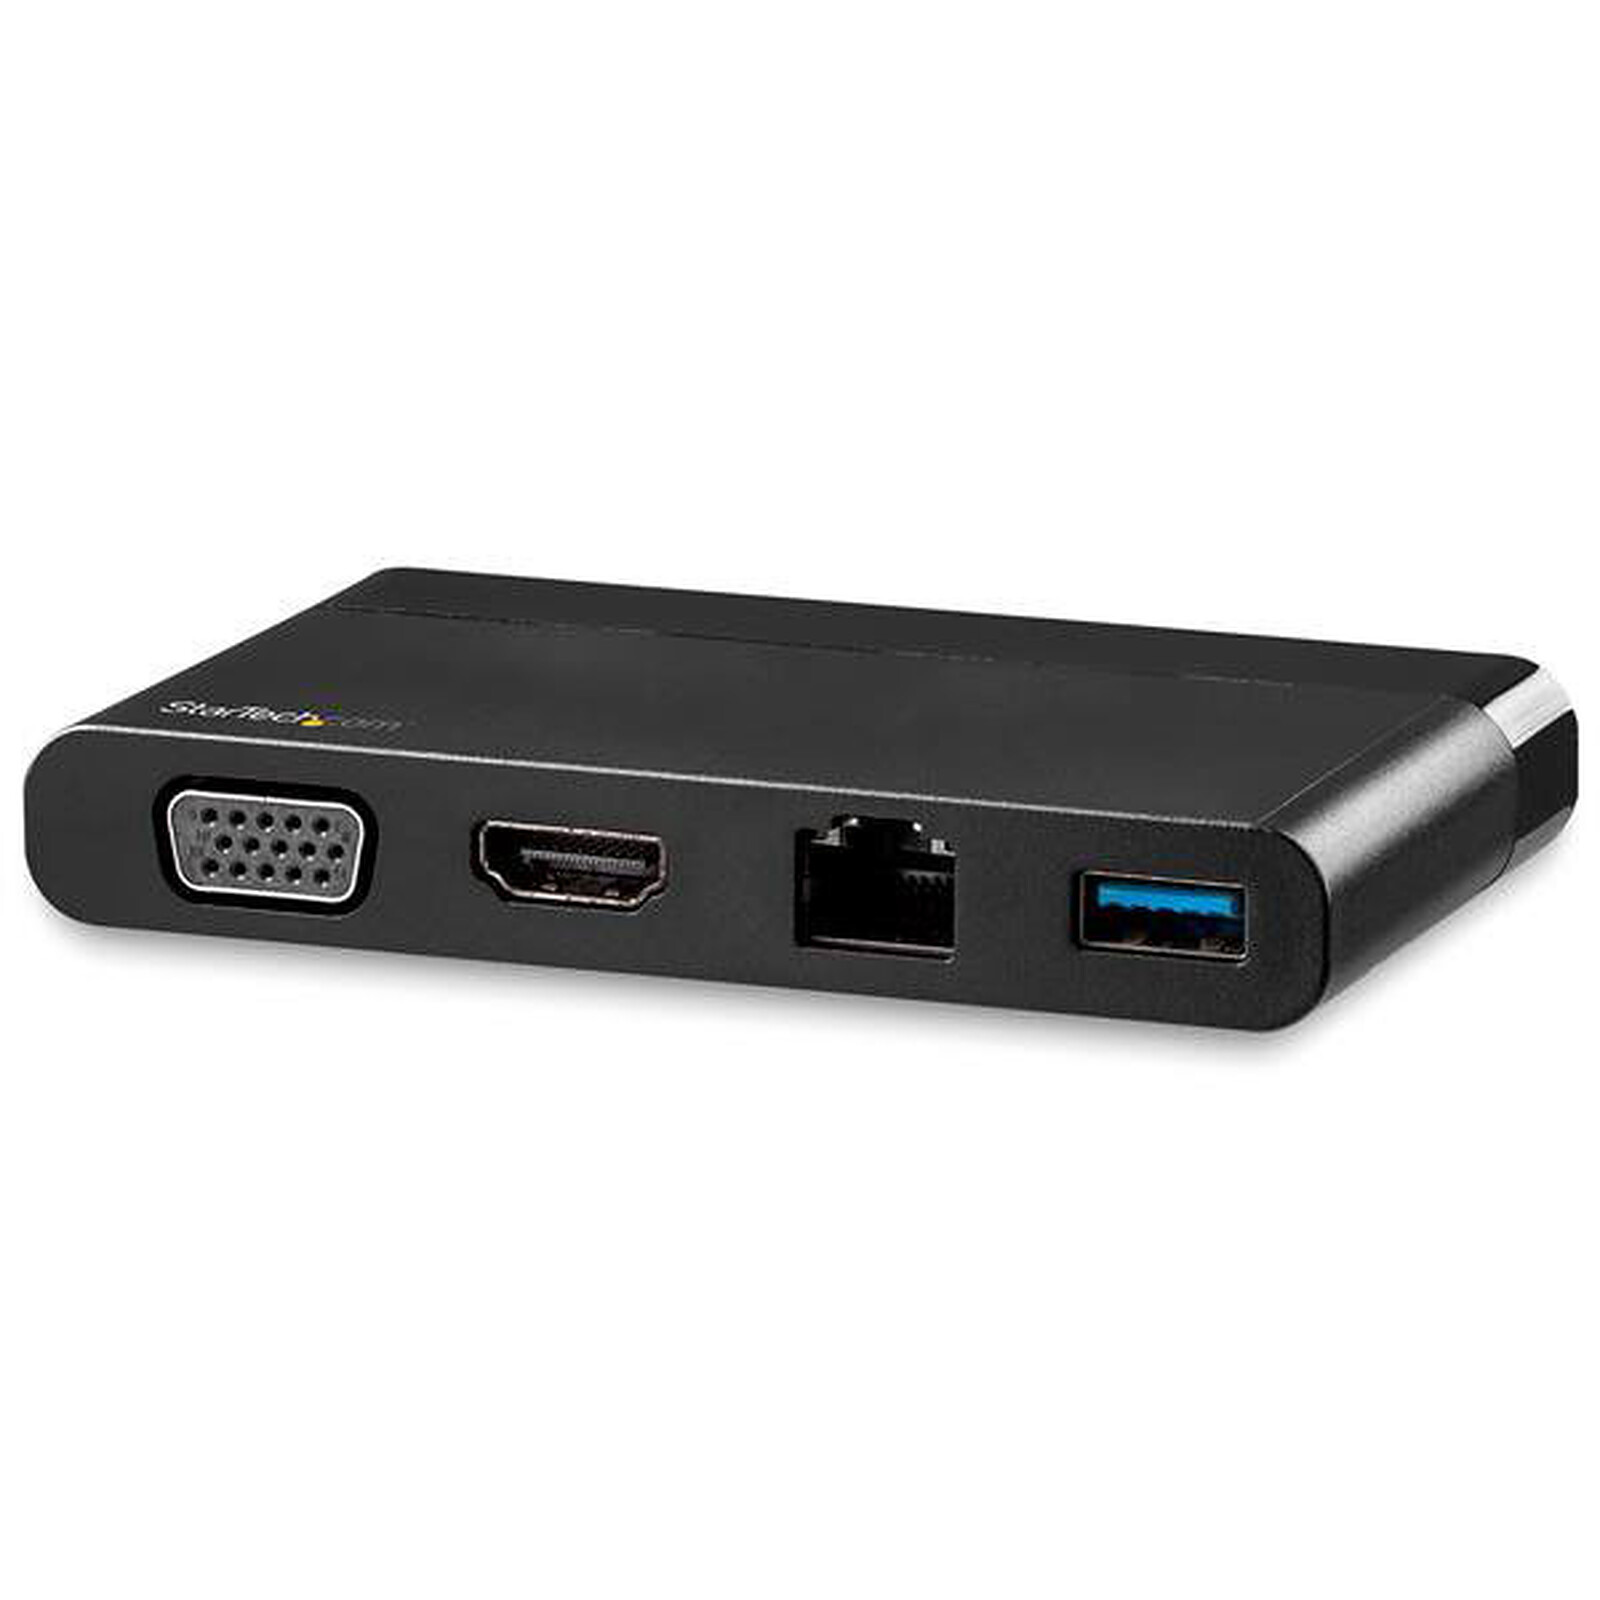 Station d'accueil USB-C multi-ports 11 en 1 - USB - Garantie 3 ans LDLC